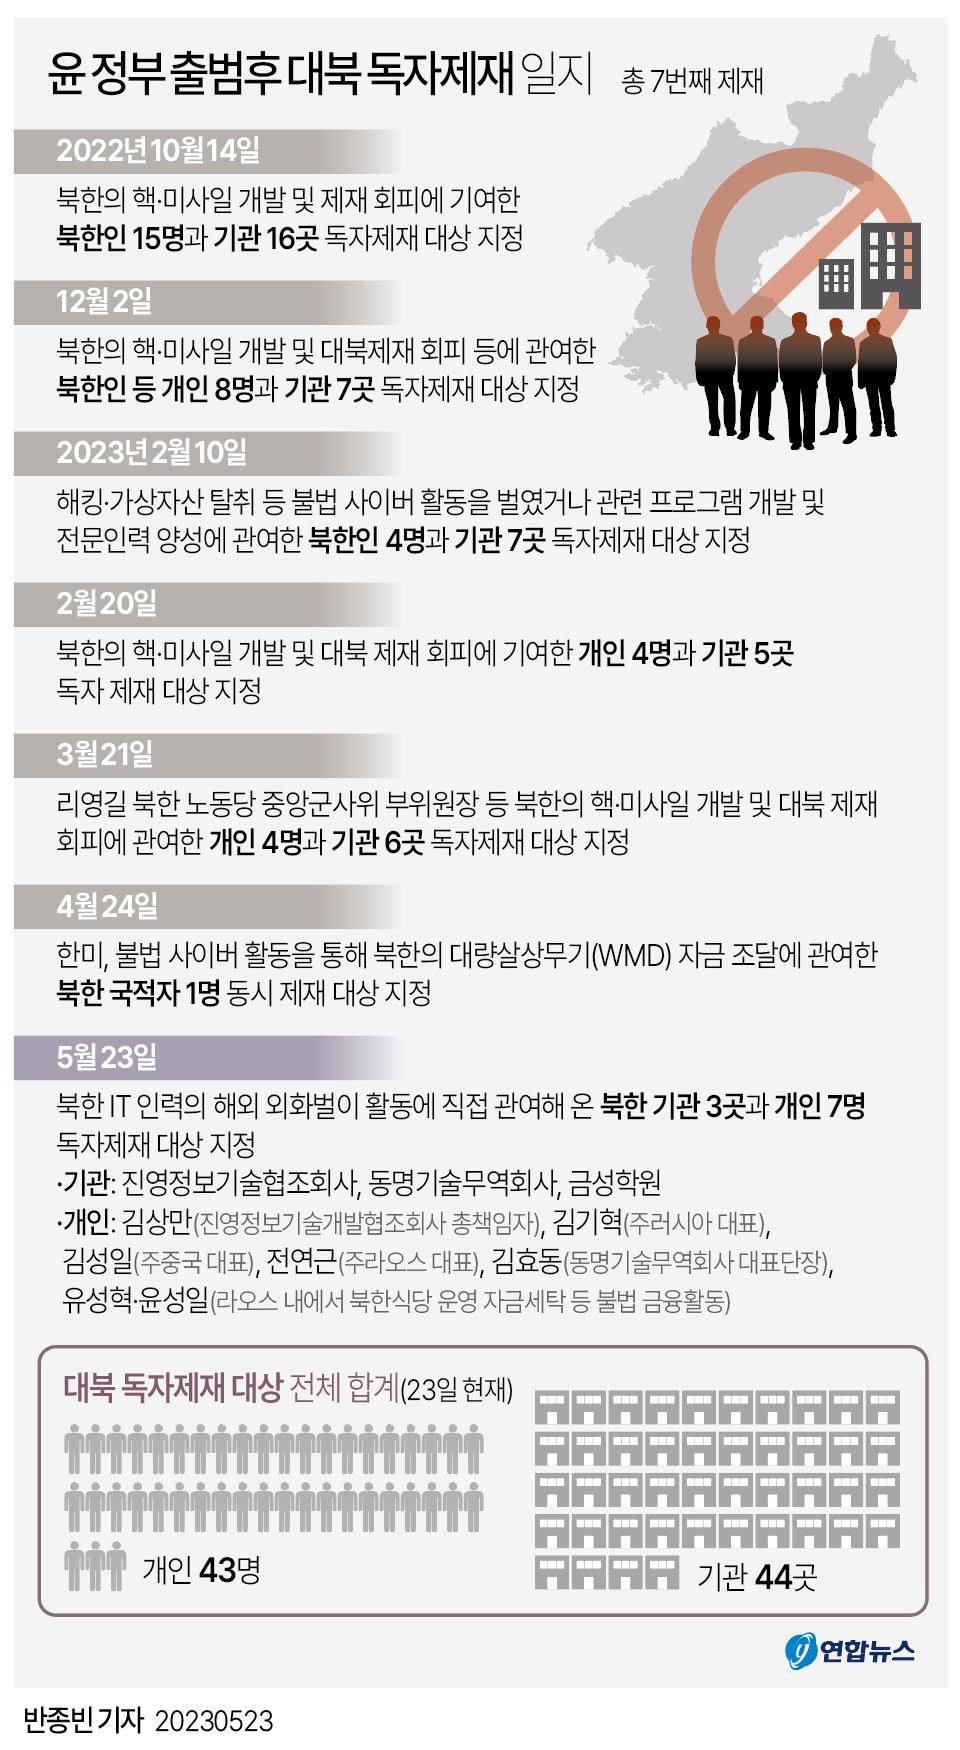 [그래픽] 윤 정부 출범후 대북 독자제재 일지